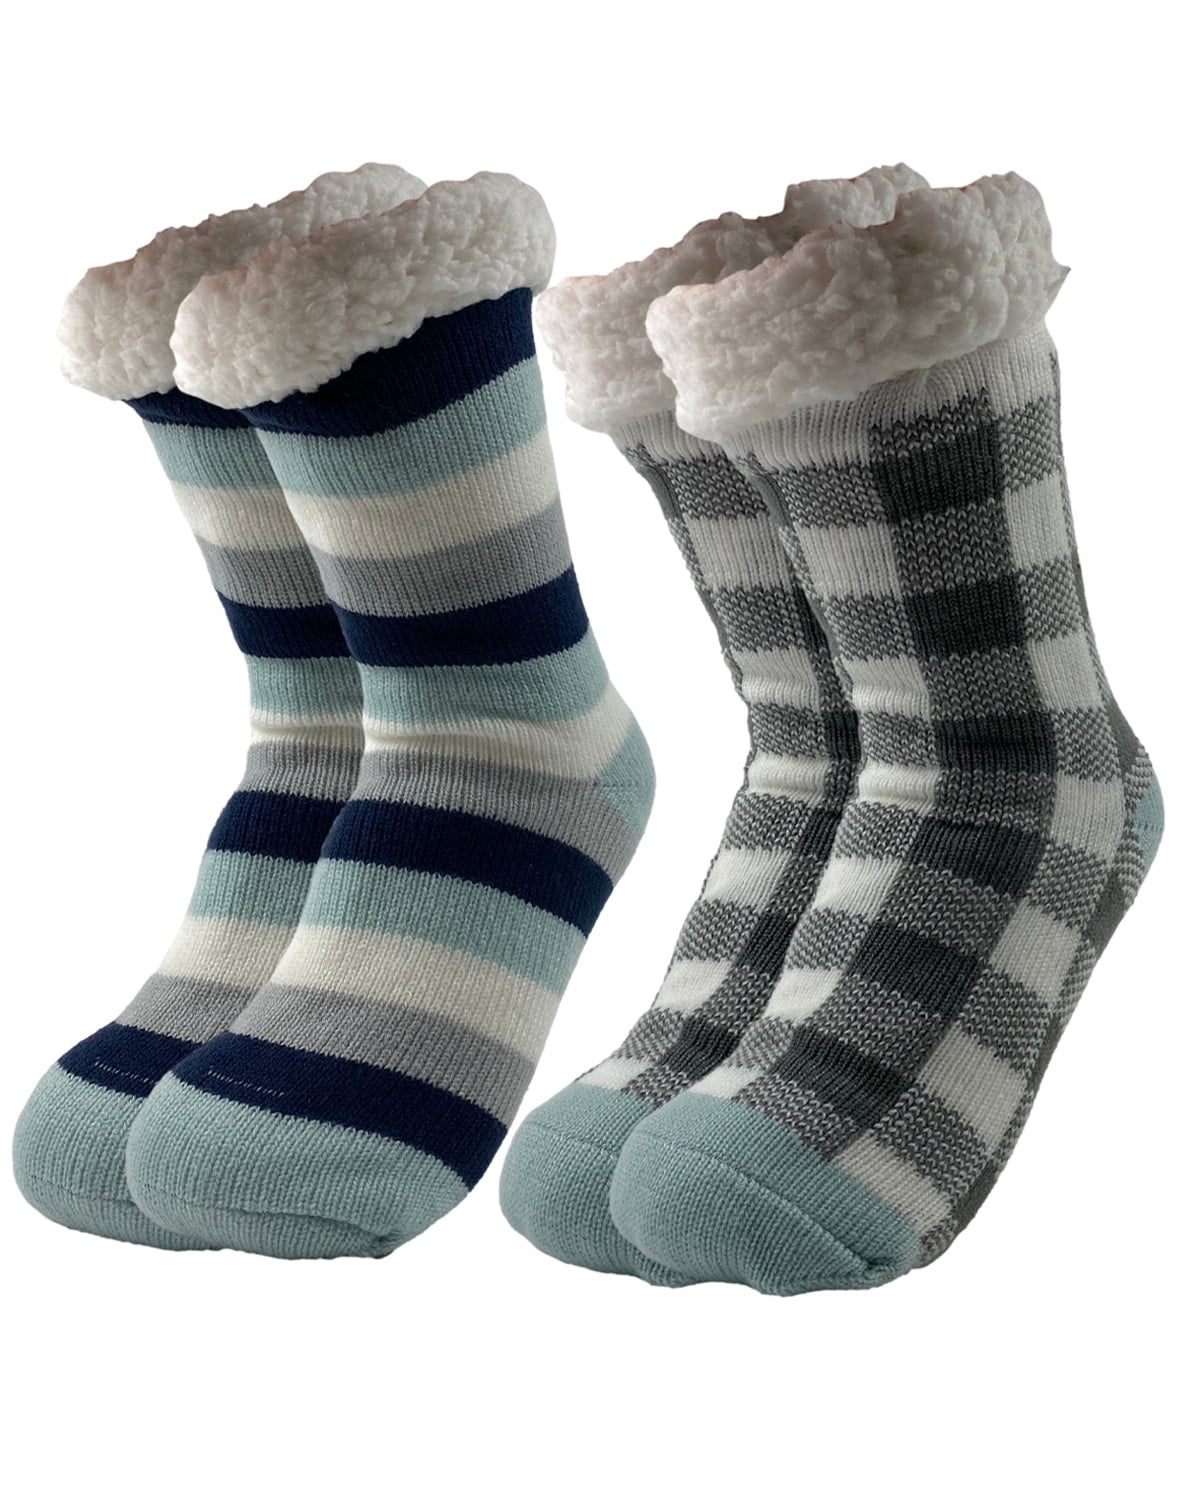 Dream Bridge Kids Slipper Socks Anti-Slip Knit Sock Slippers for Boys Girls Indoor Outdoor Socks with Rubber Bottom Sole